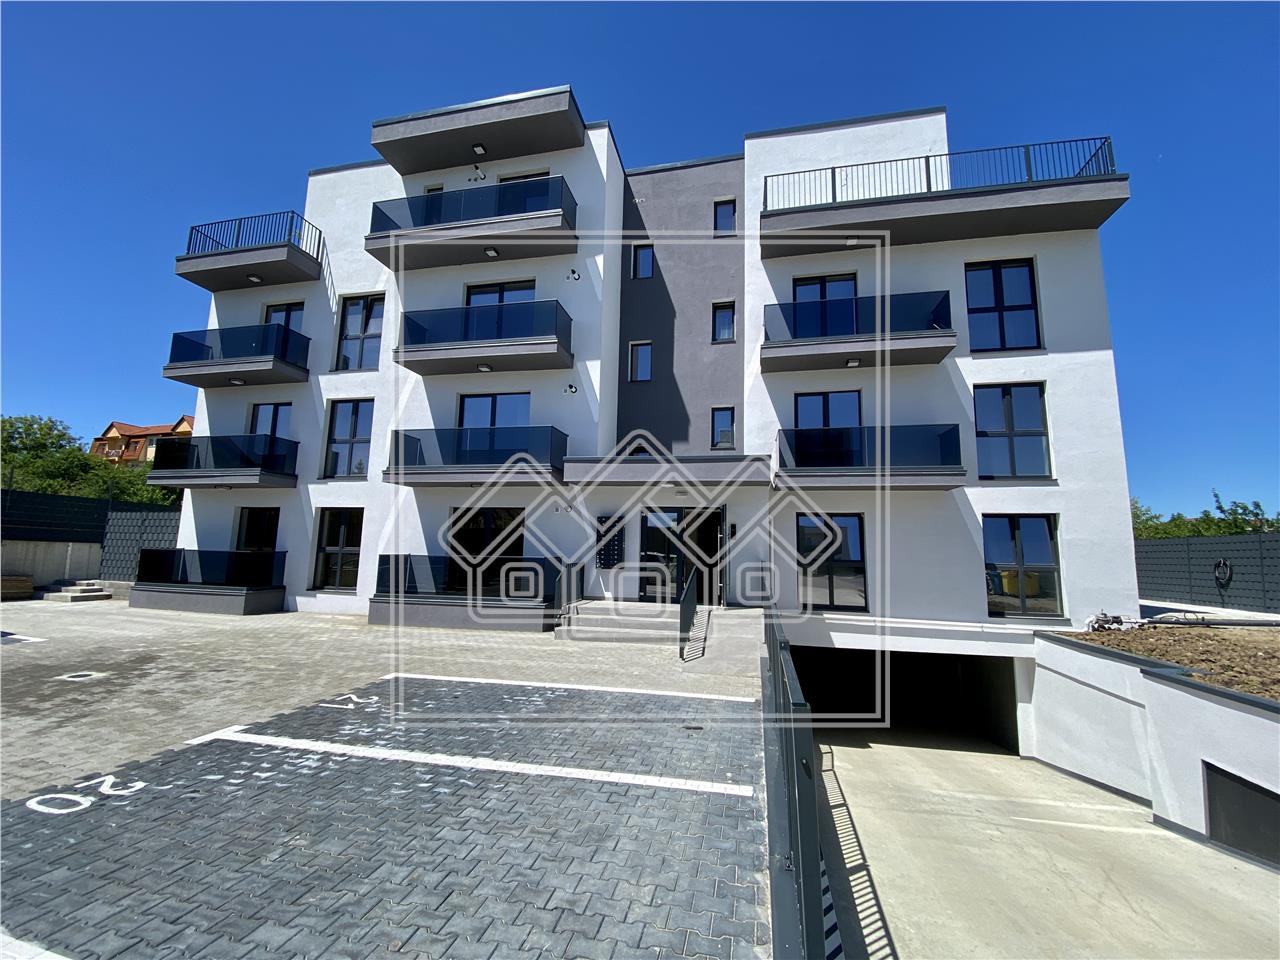 3 room apartment for sale in Sibiu - 2 balconies - underfloor heating